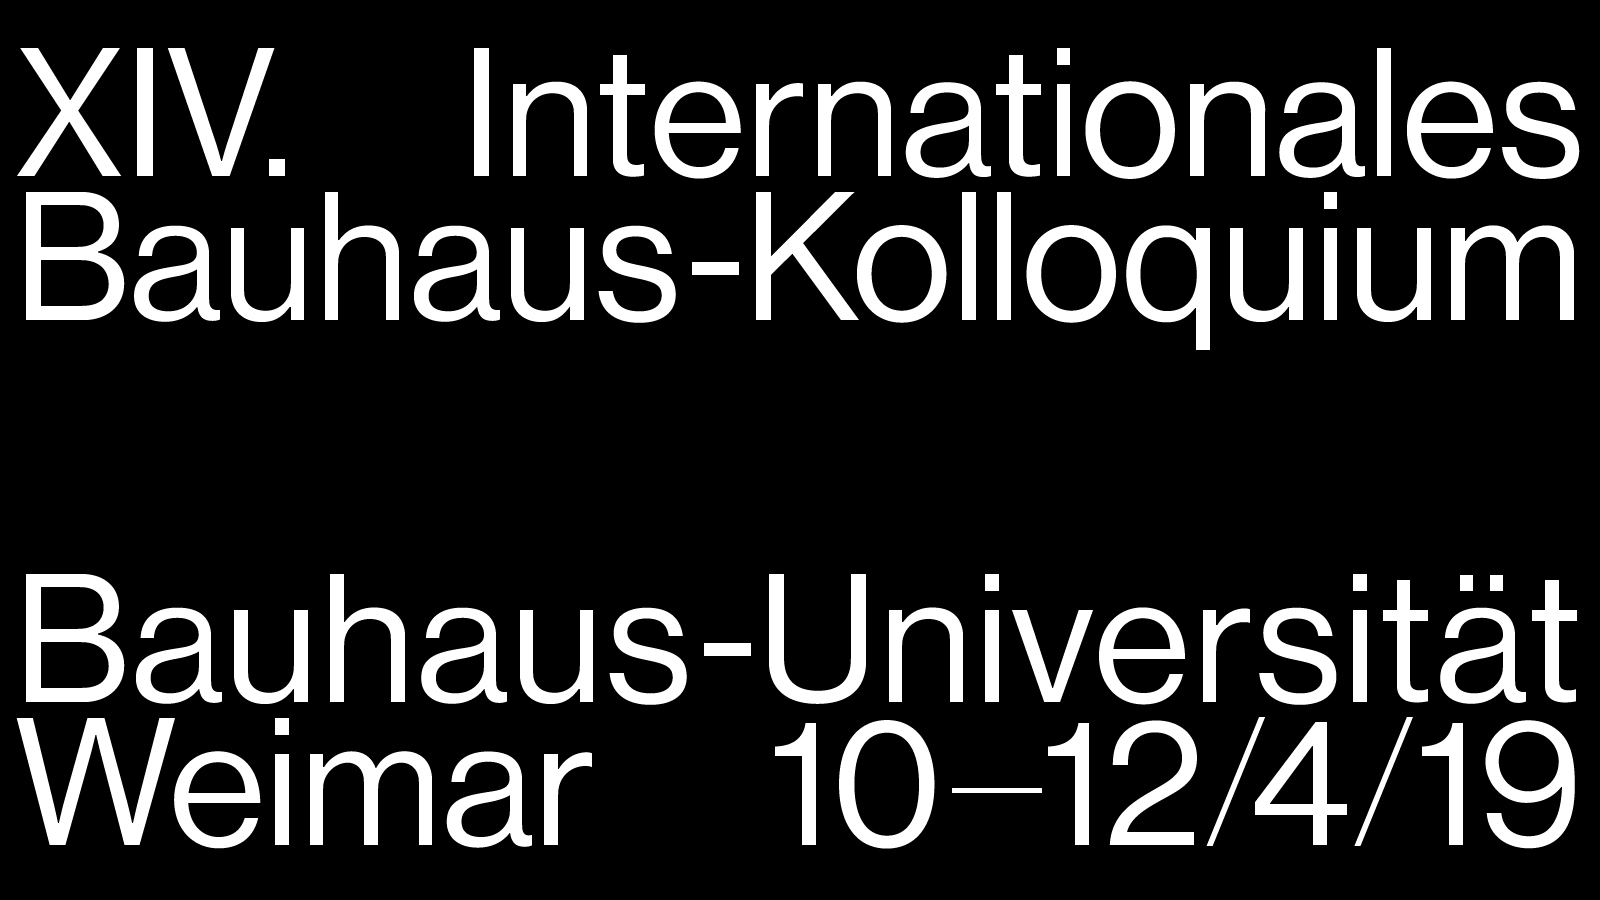 (c) Bauhaus-kolloquium.de